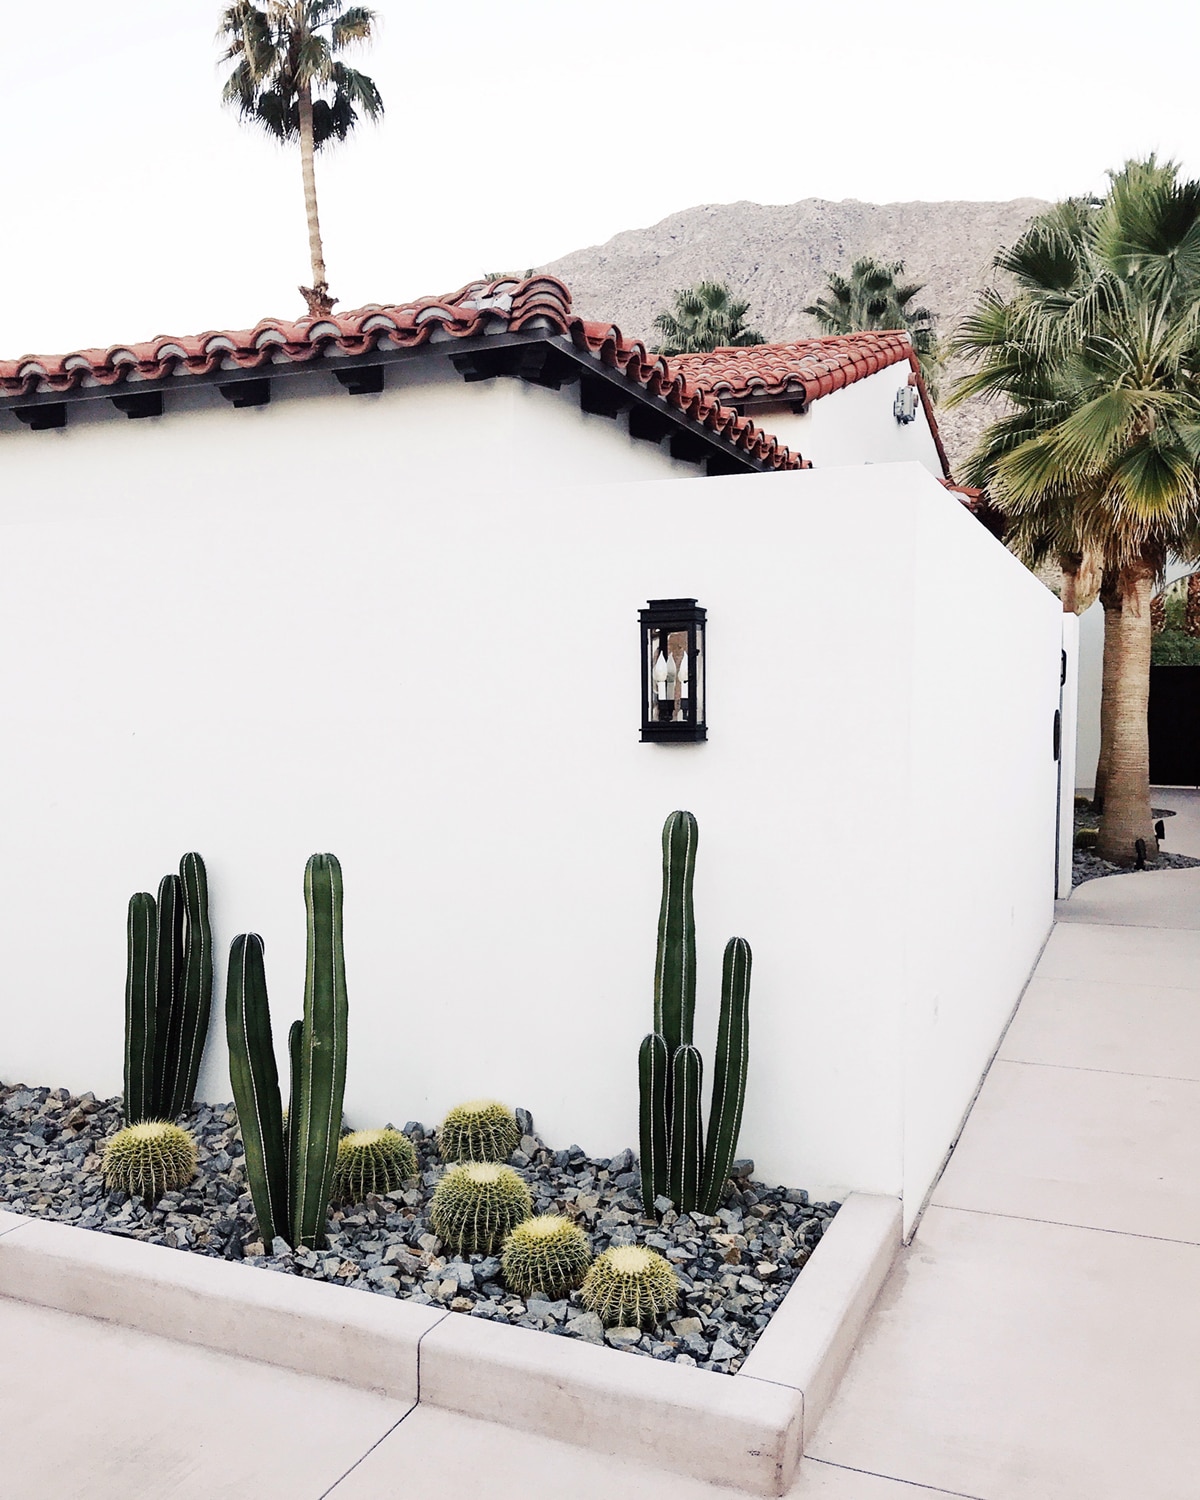 cactus minimalis landscaping | tour of la serena villas palm springs on coco kelley